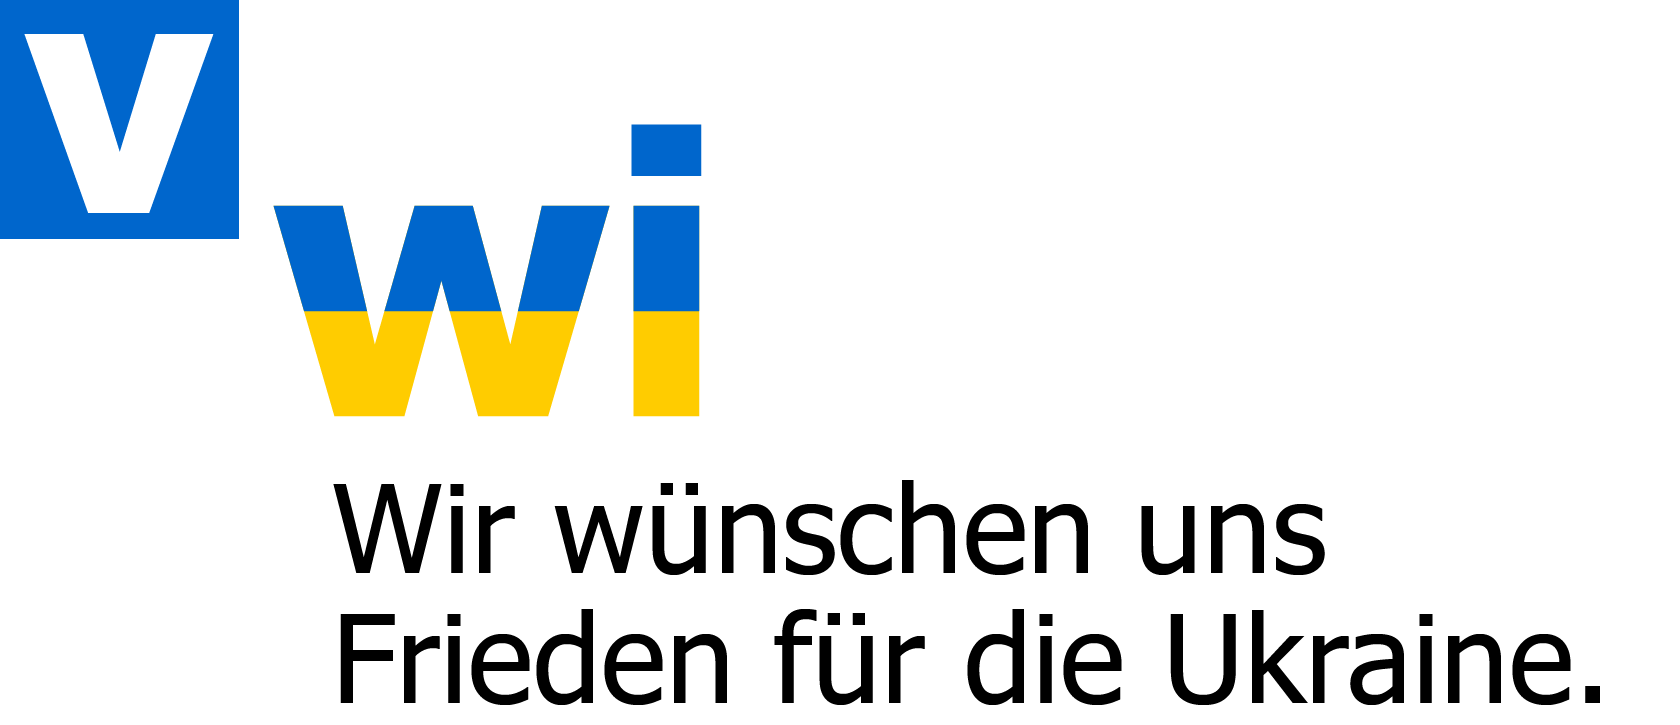 VWI Verband Deutscher Wirtschaftsingenieure e.V.